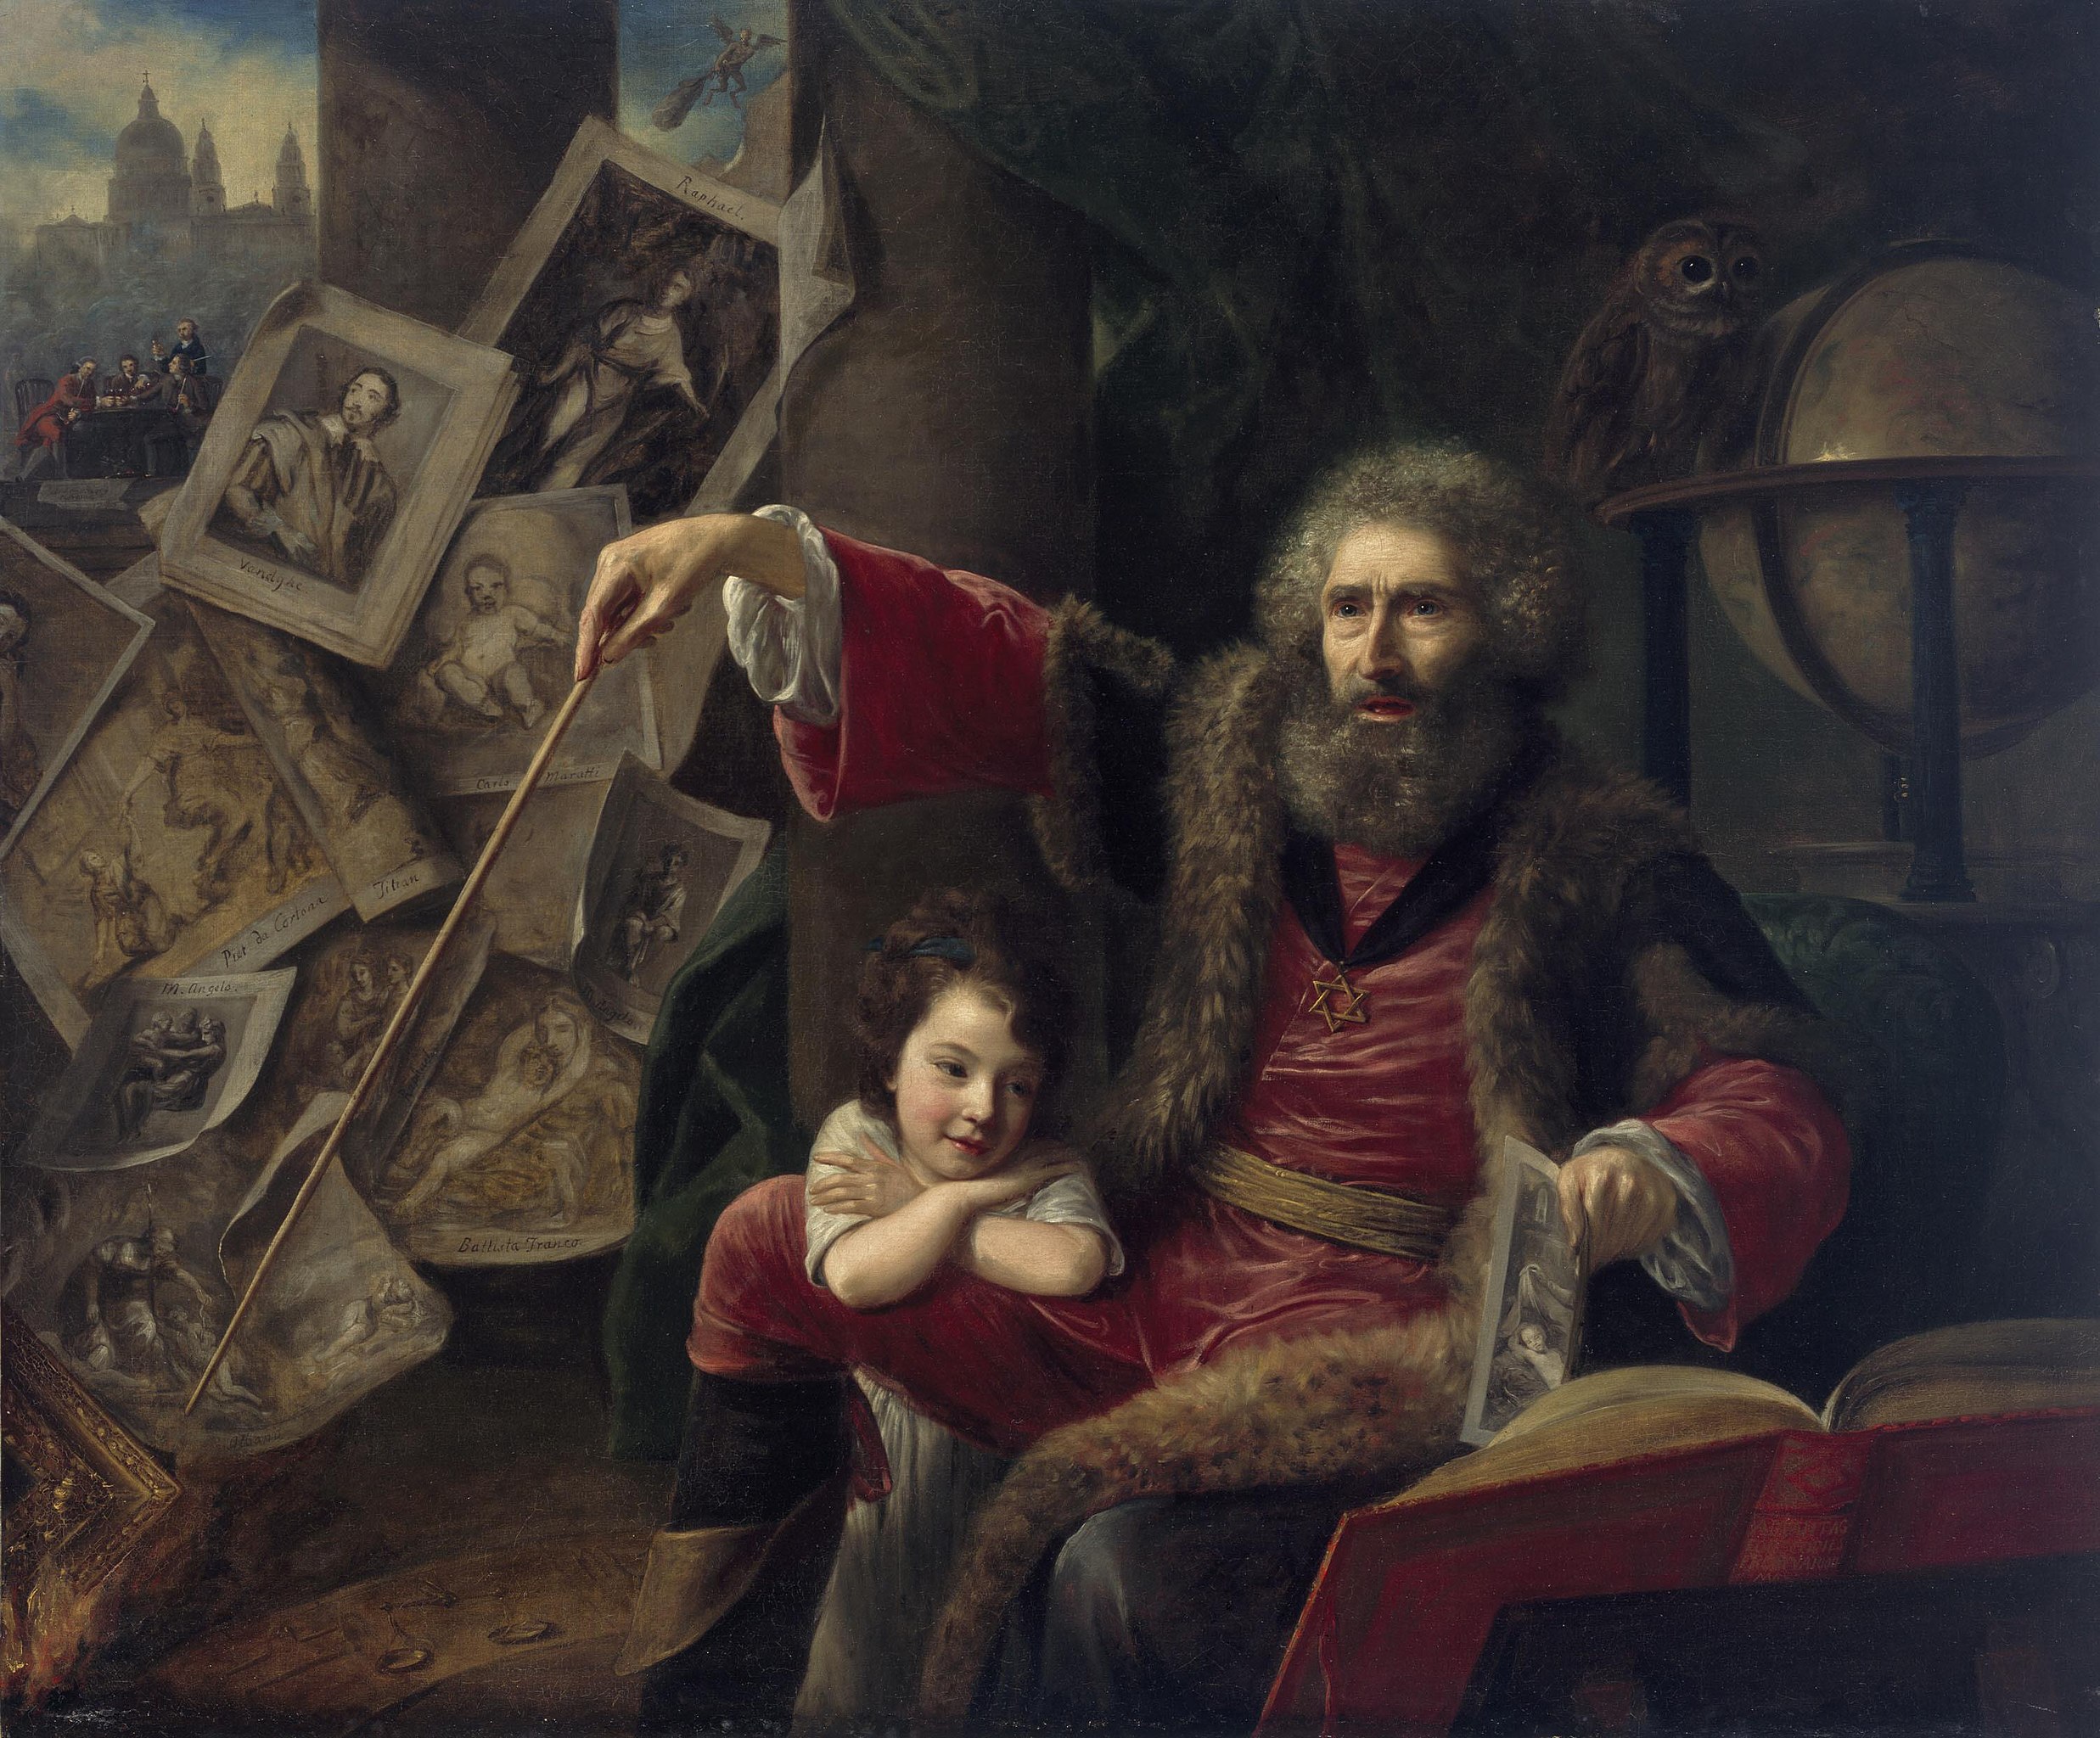 Magicianul (Prestidigitatorul pictural care afișează întreaga artă a înșelăciunii optice) by Nathaniel Hone the Elder - 1775 - 145 x 173 cm 